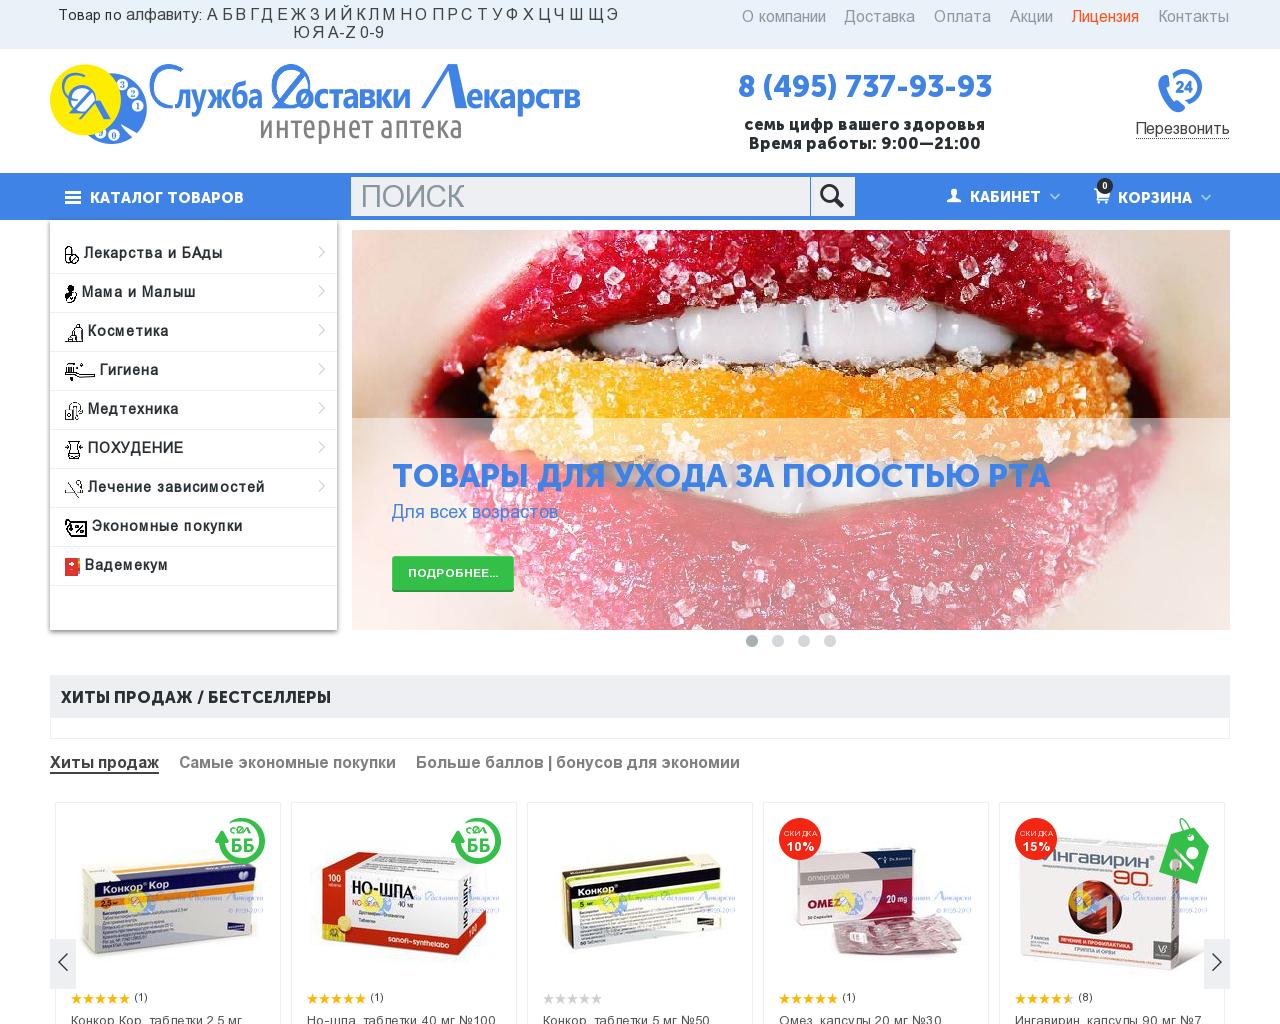 Изображение сайта apteka-cdl.ru в разрешении 1280x1024